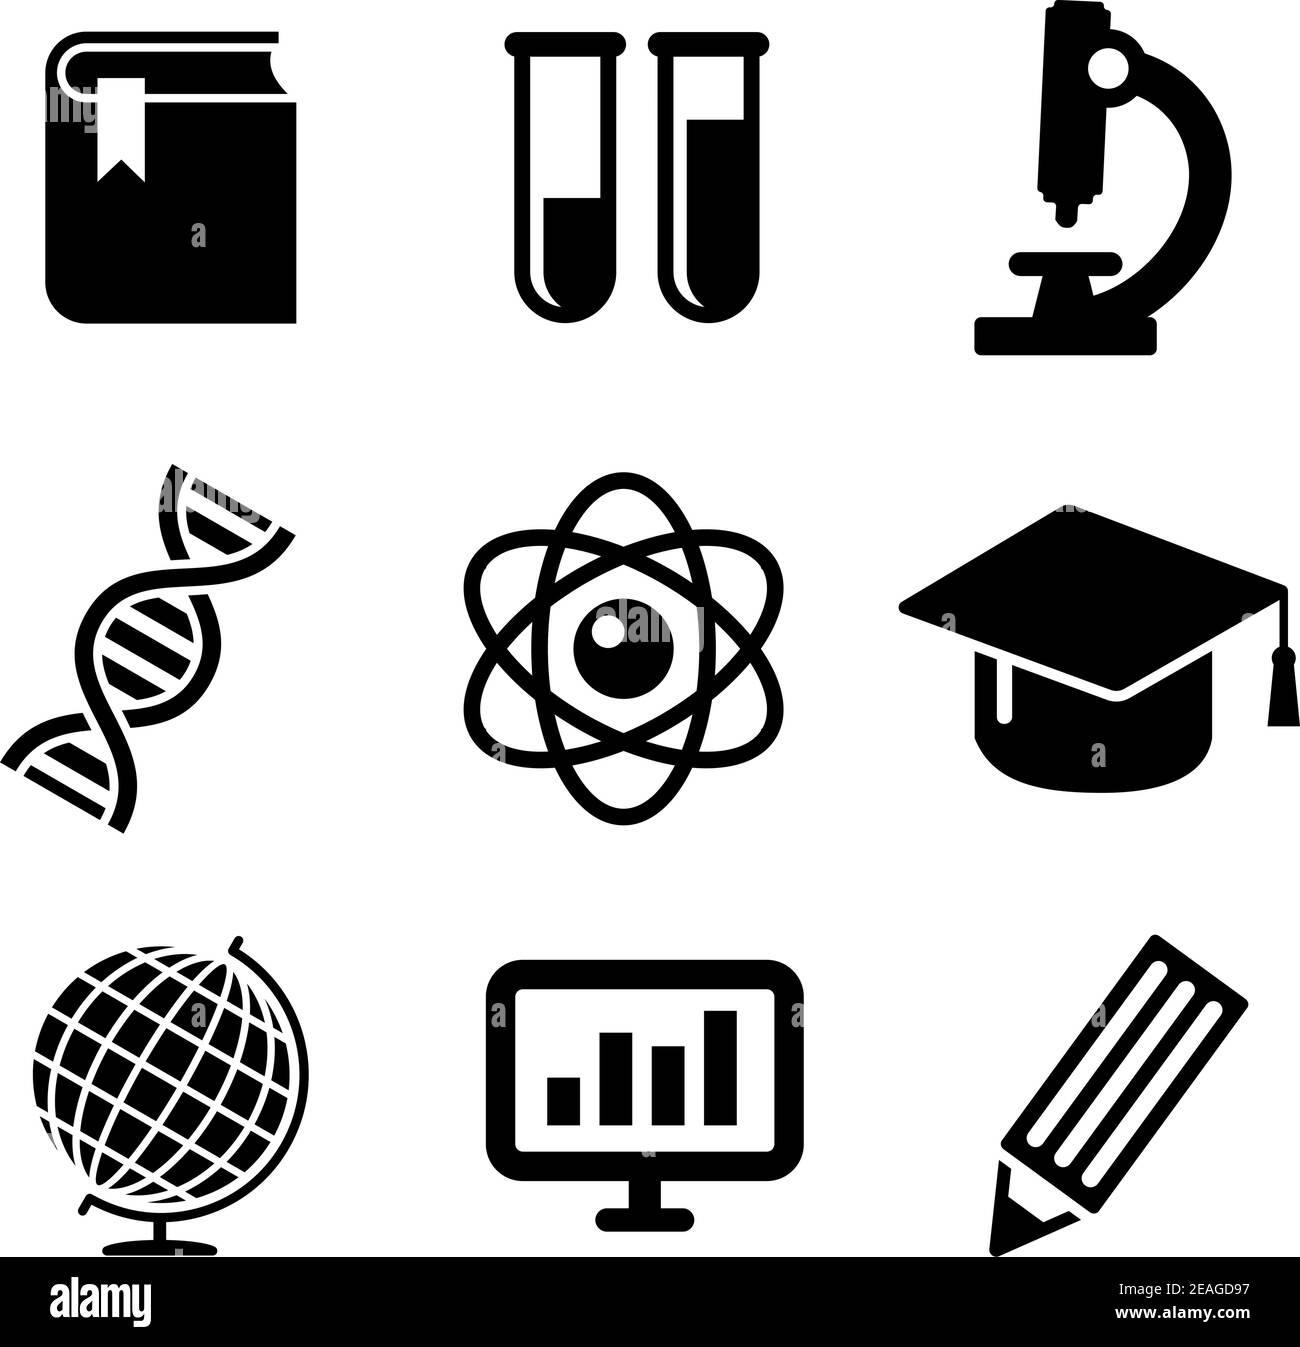 Symbole für Wissenschaft und Bildung, die Buch, Reagenzgläser, DNA, Graduierung, Mikroskop, Atom, Bleistift, Globus und Computer darstellen Stock Vektor